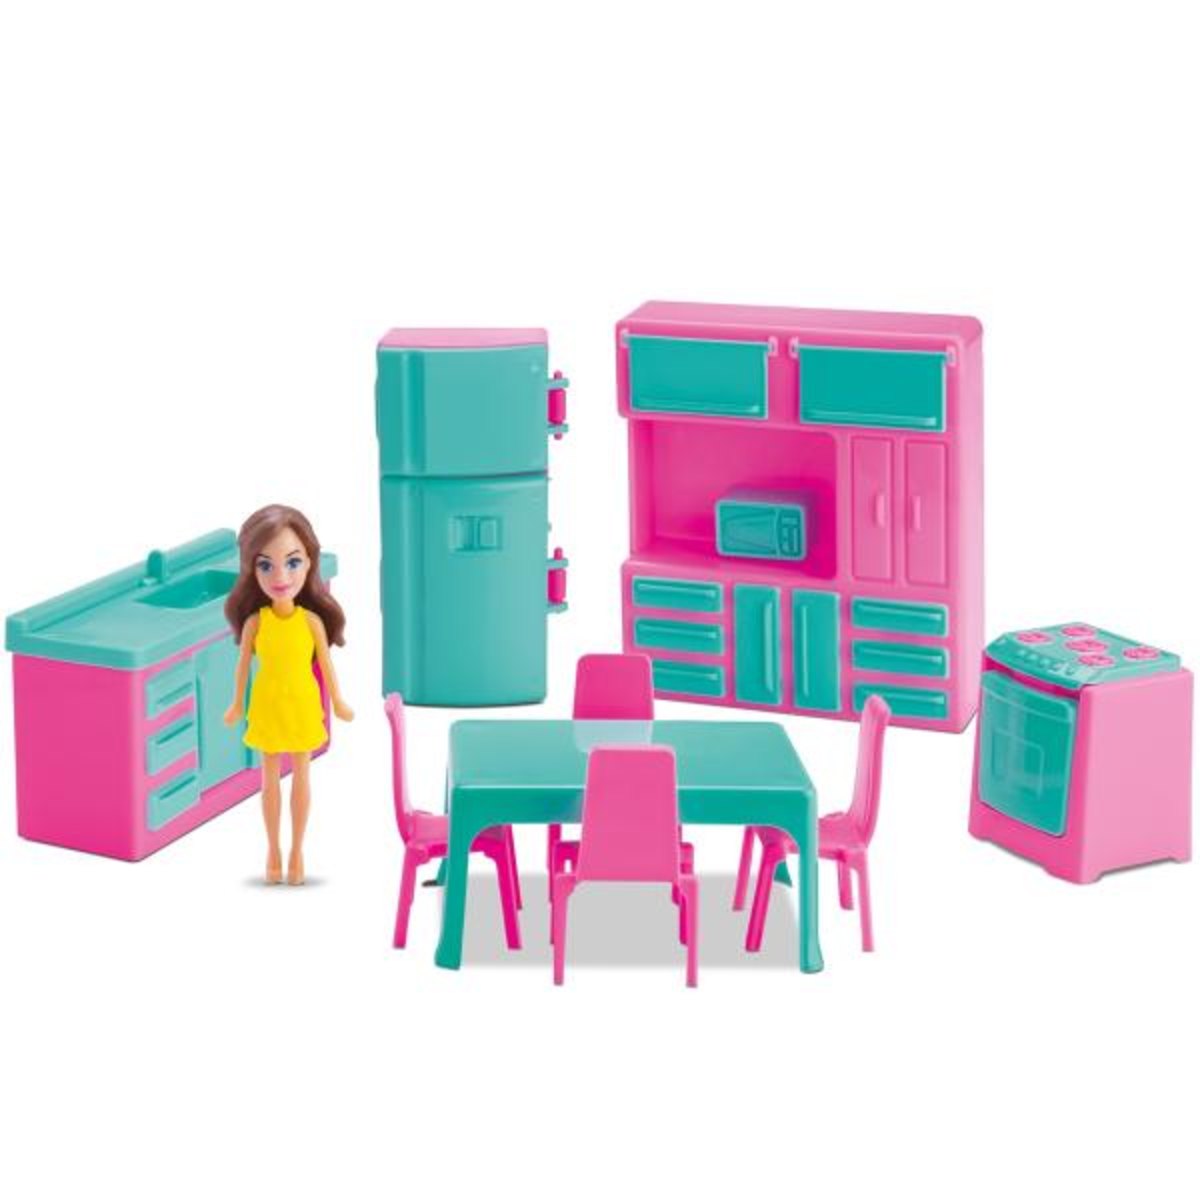 Menor preço em Mini Cozinha Infantil 10 pçs com boneca - Judy Home - Samba Toys